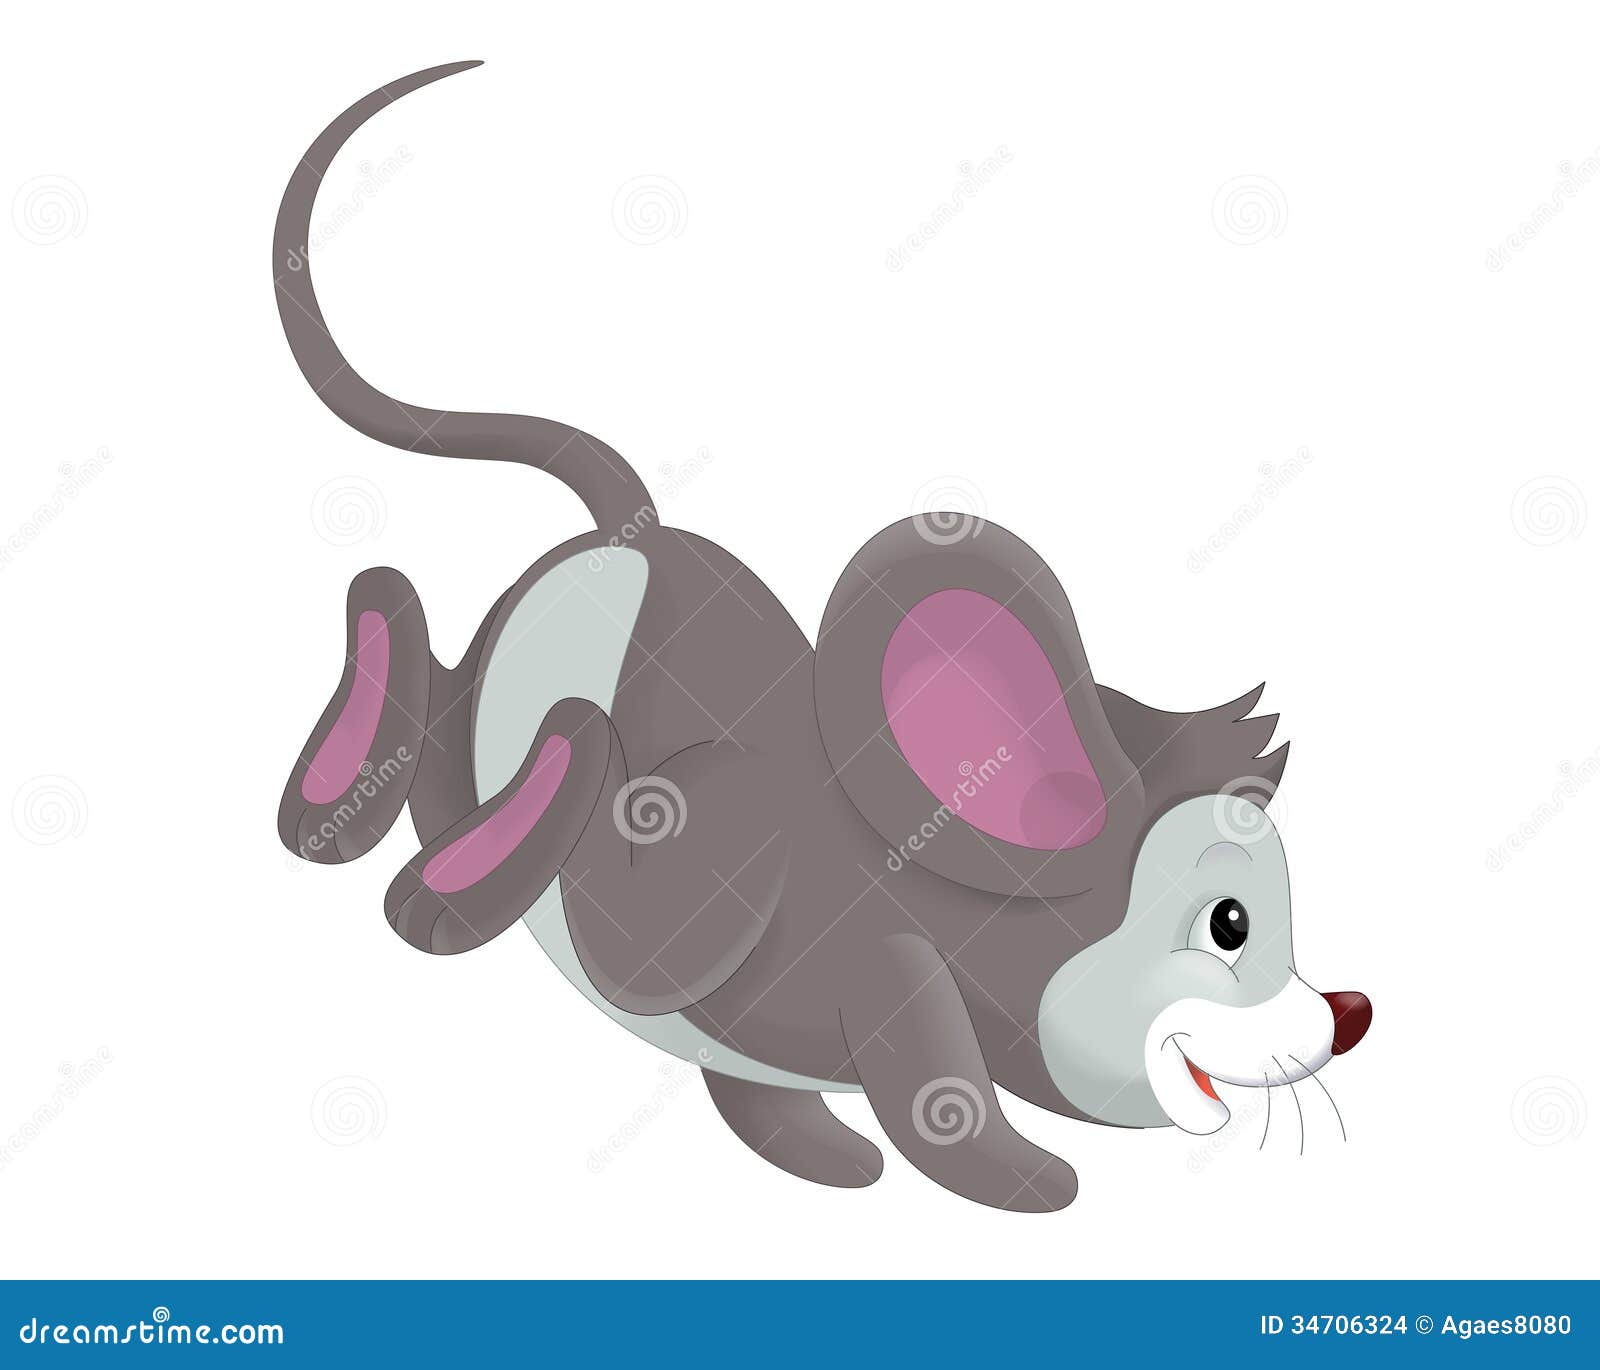 mouse race clipart - photo #21